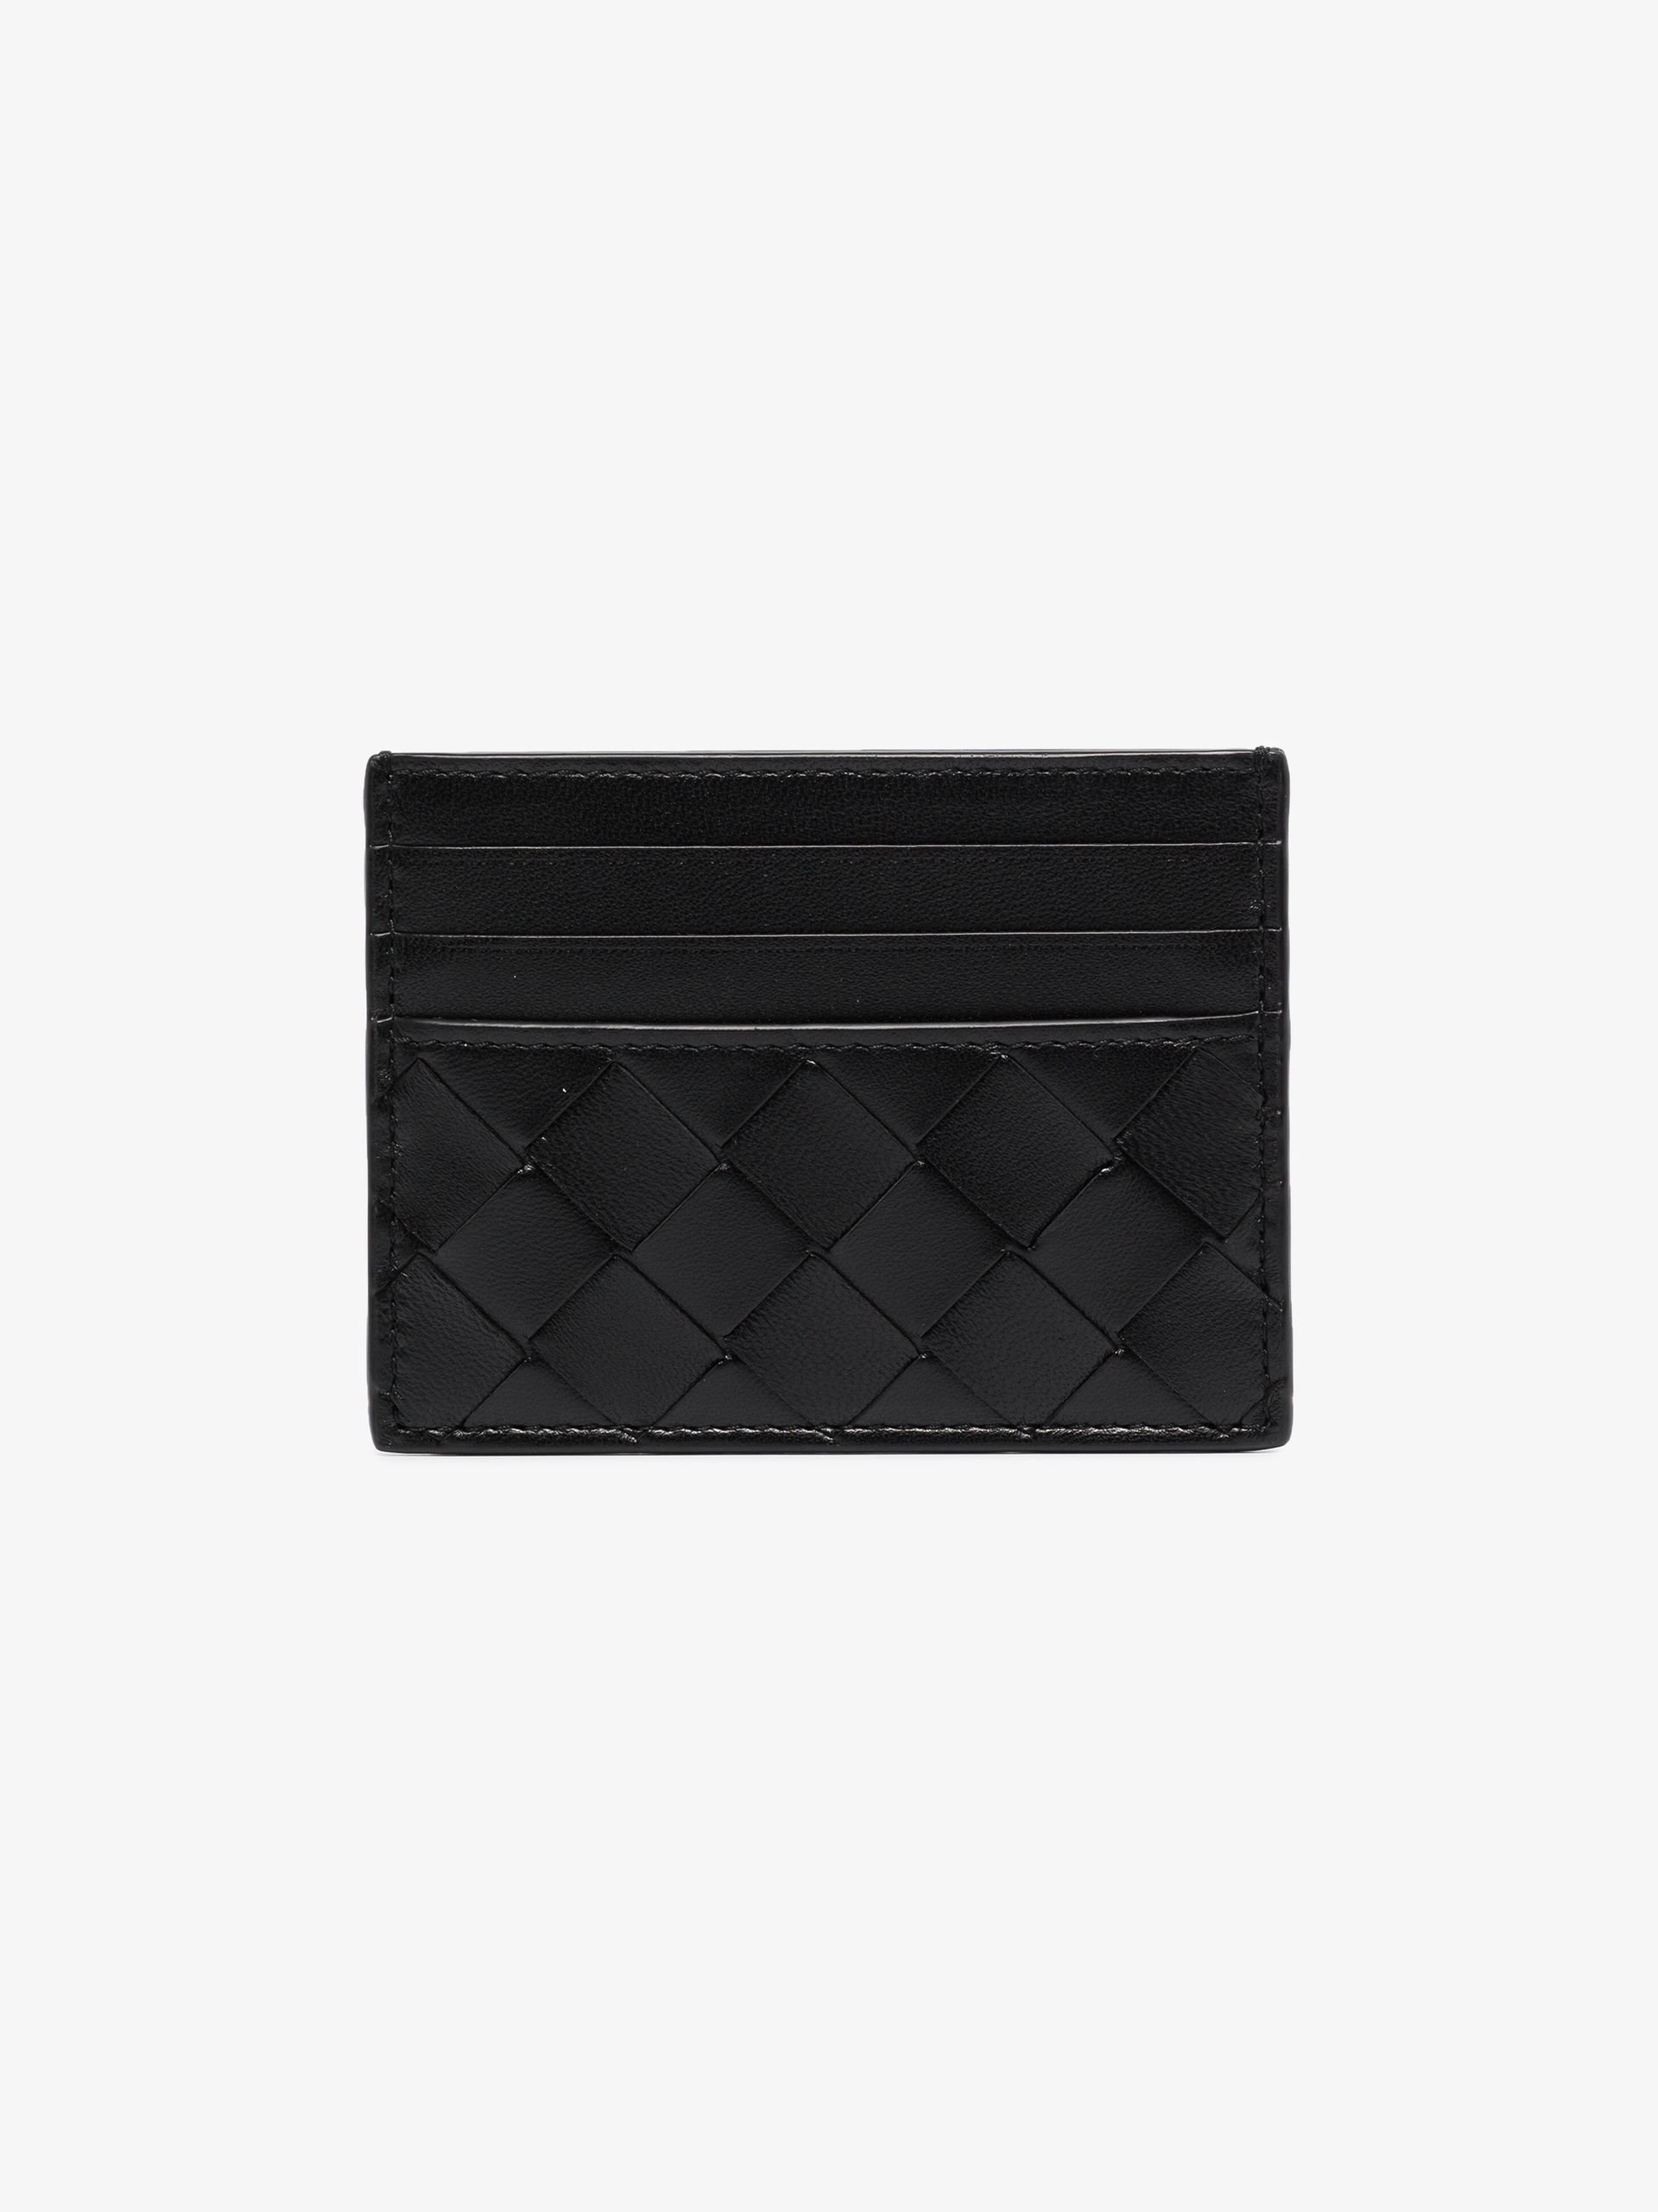 black leather card holder - 2